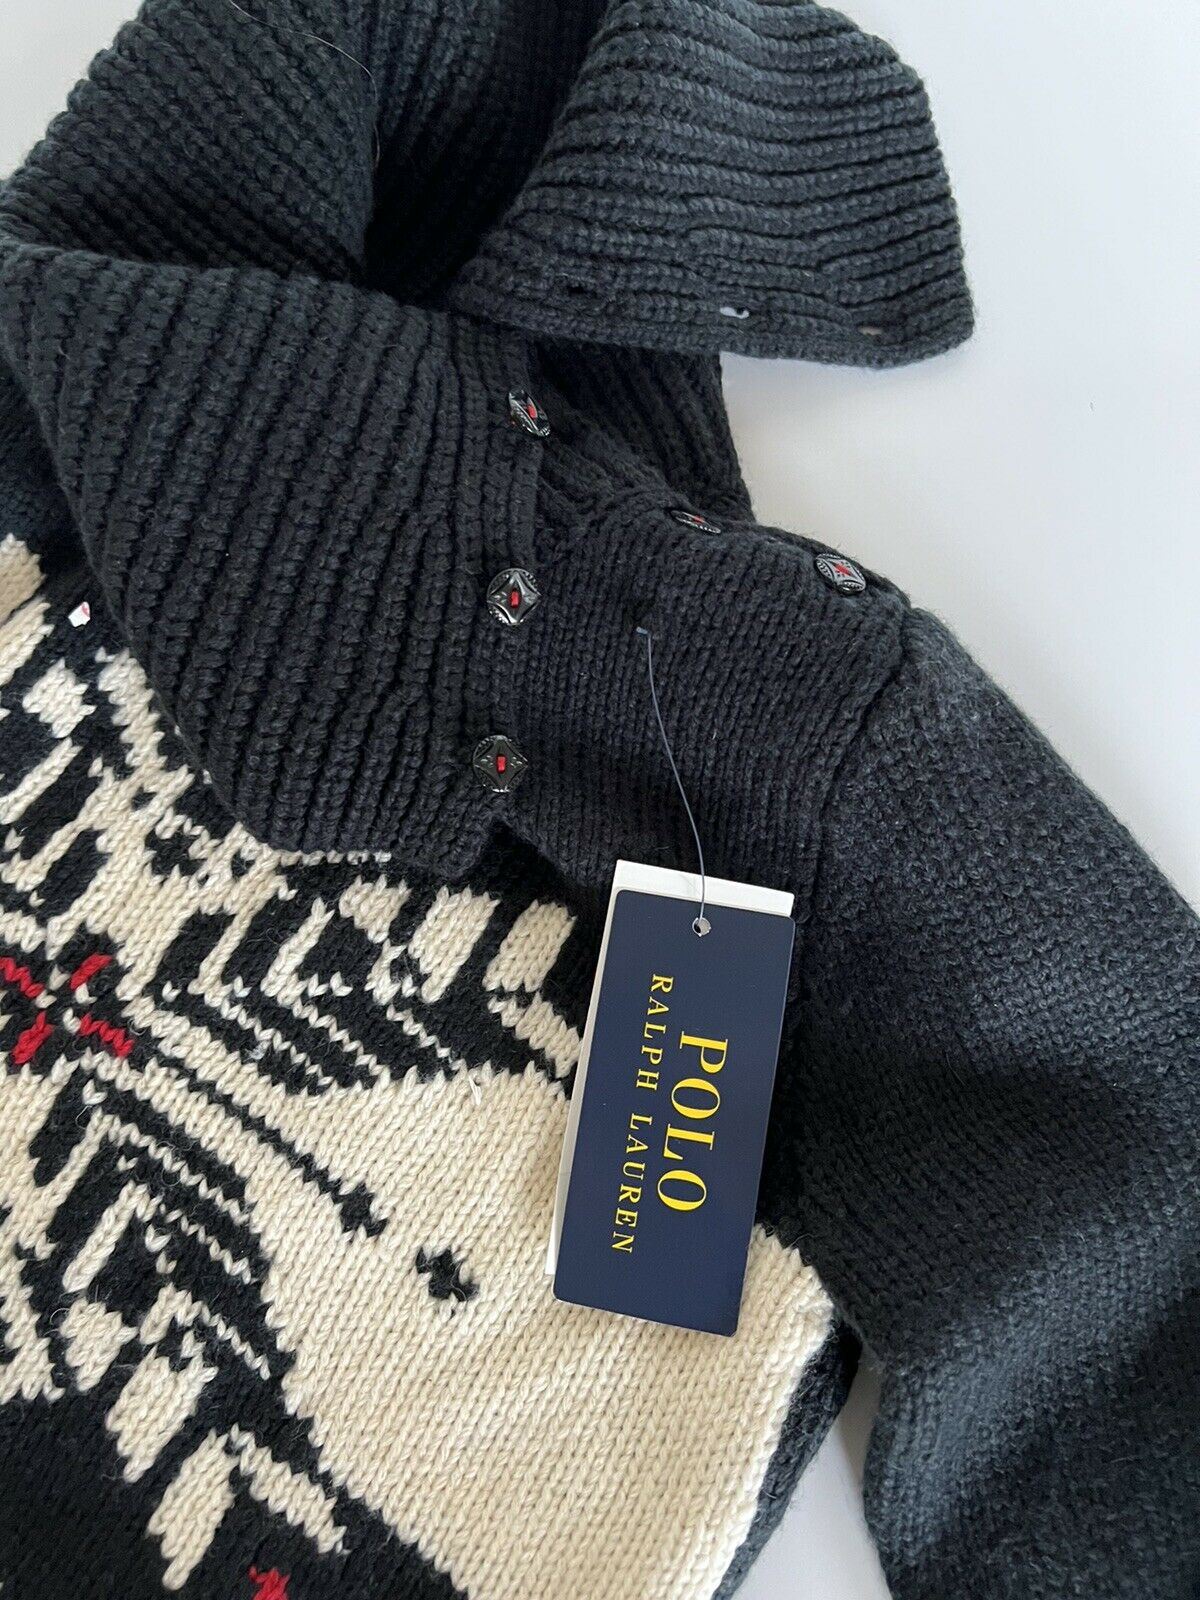 СЗТ $145 Polo Ralph Lauren для девочек, черный снежный мягкий свитер, размер S (7)